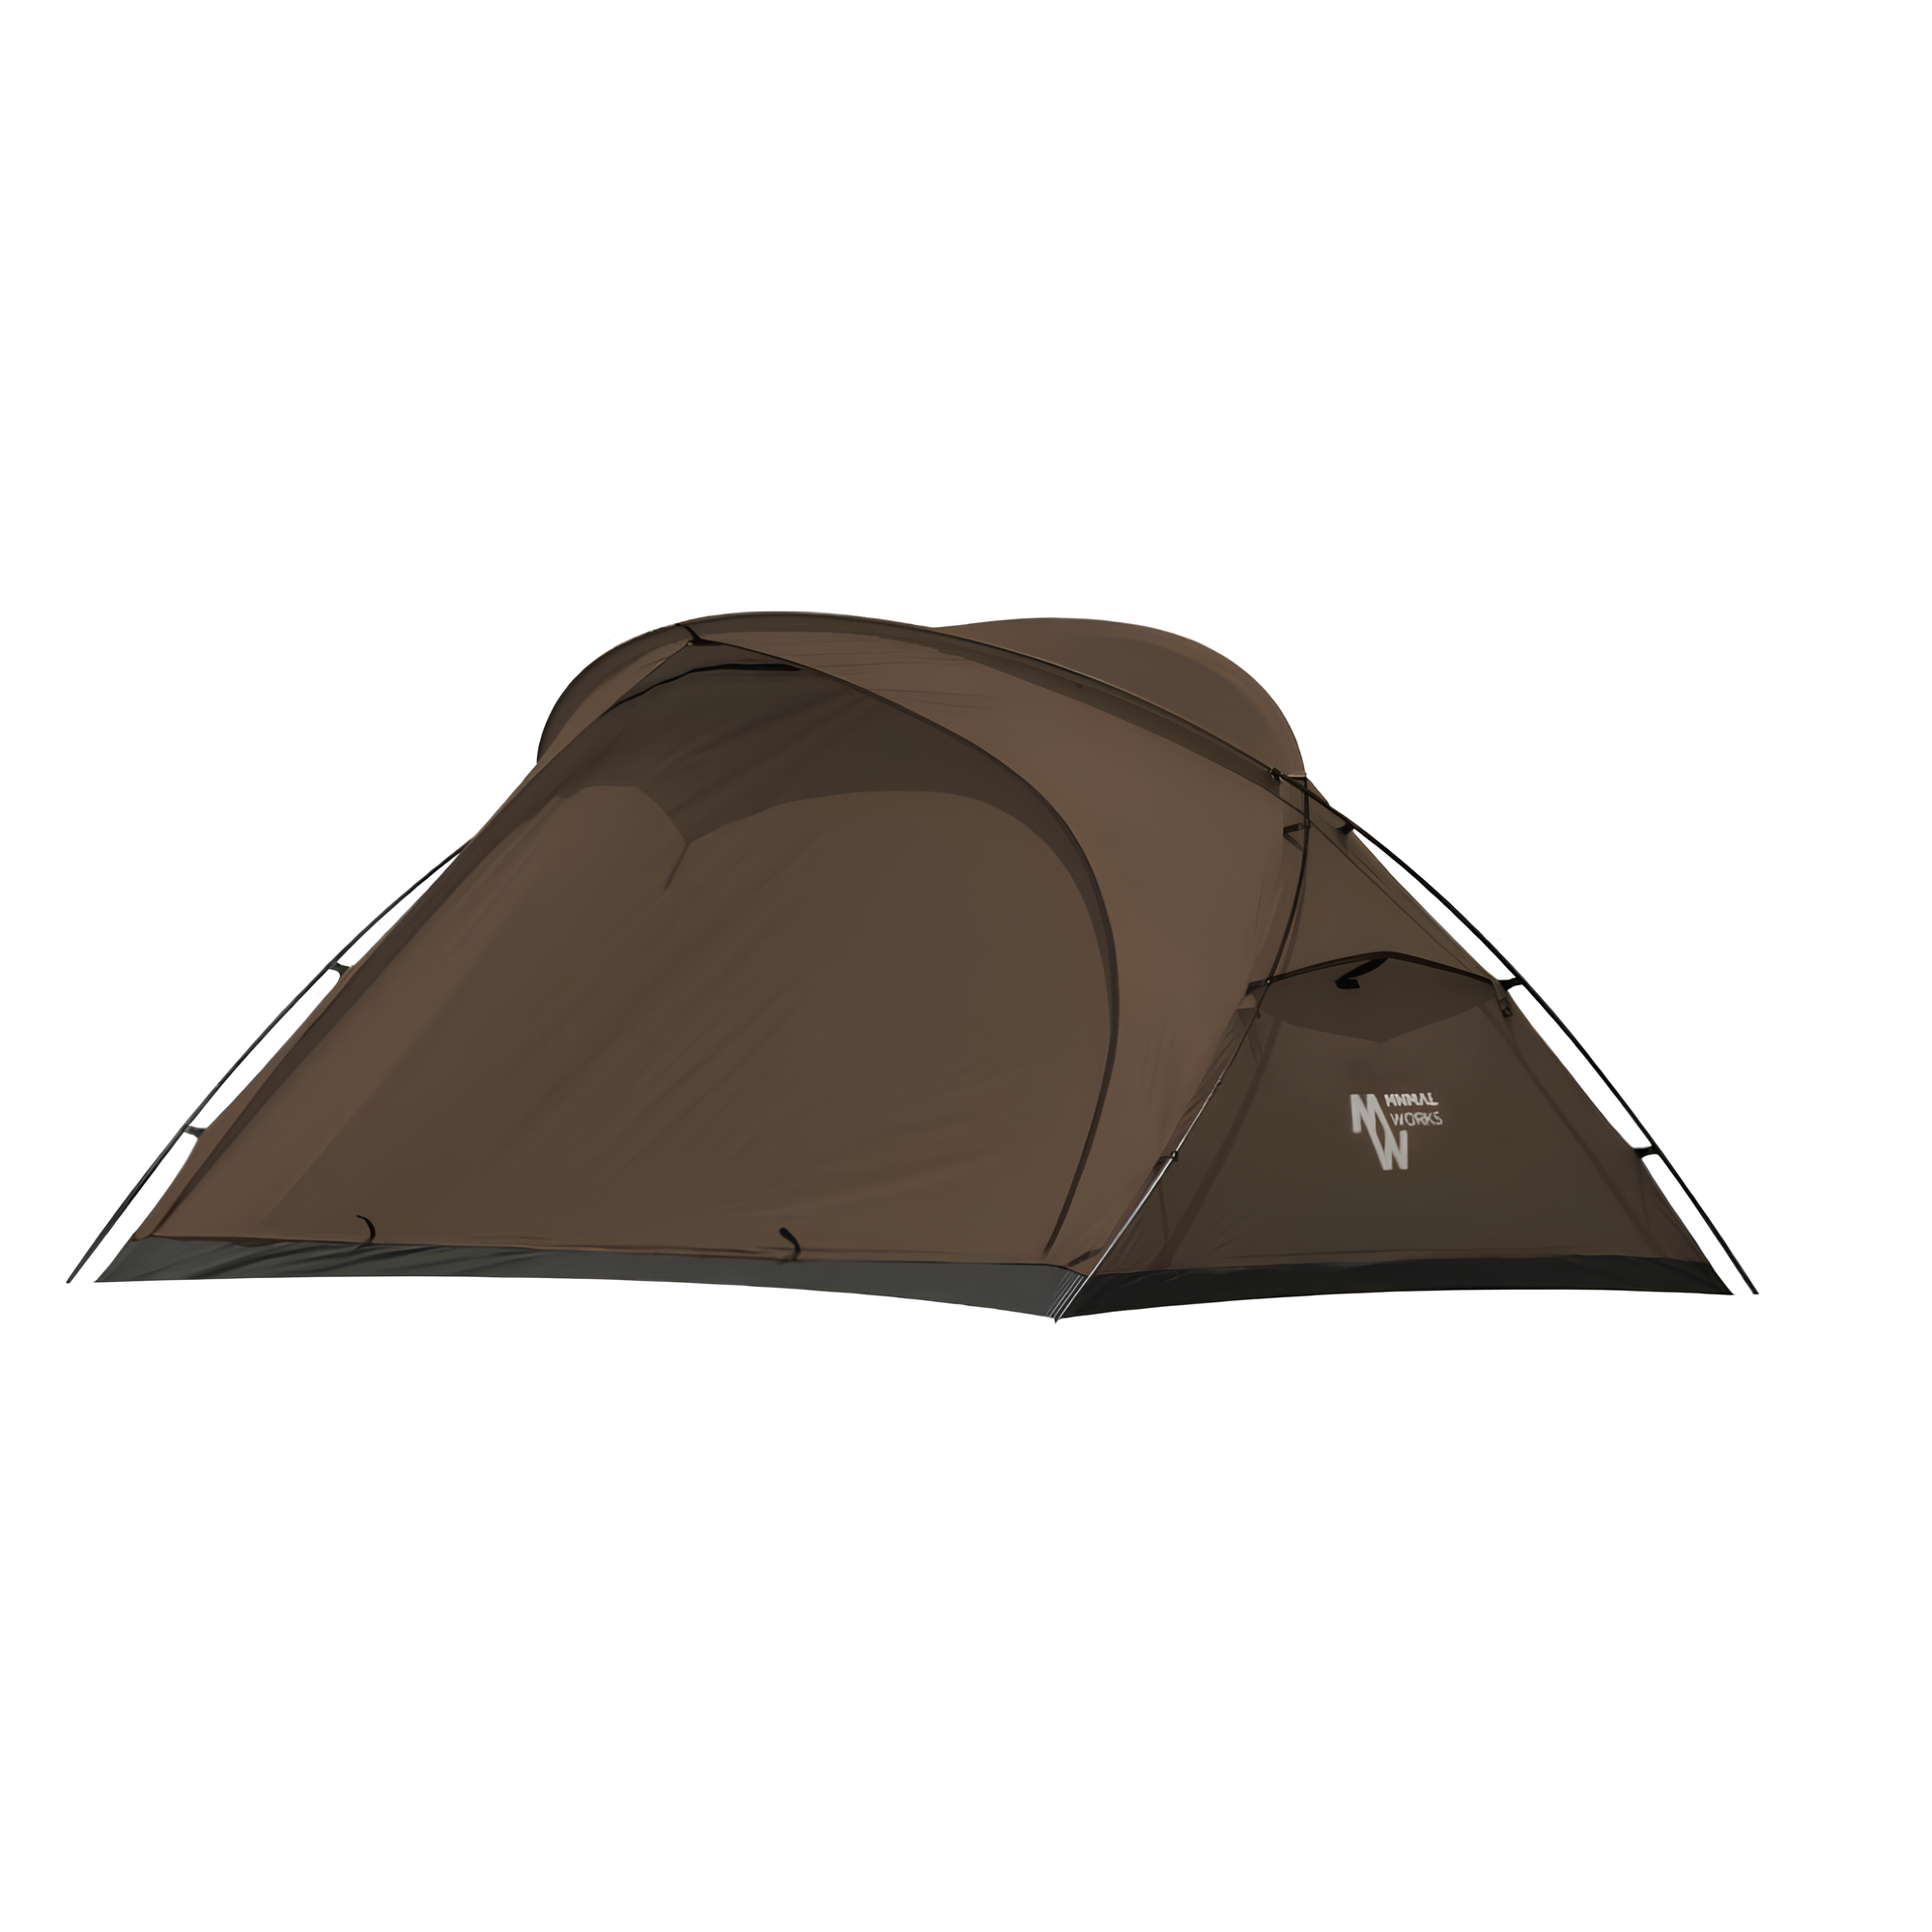 미니멀웍스 캠핑 텐트 파프리카 매그넘 탄 전용가방 세트